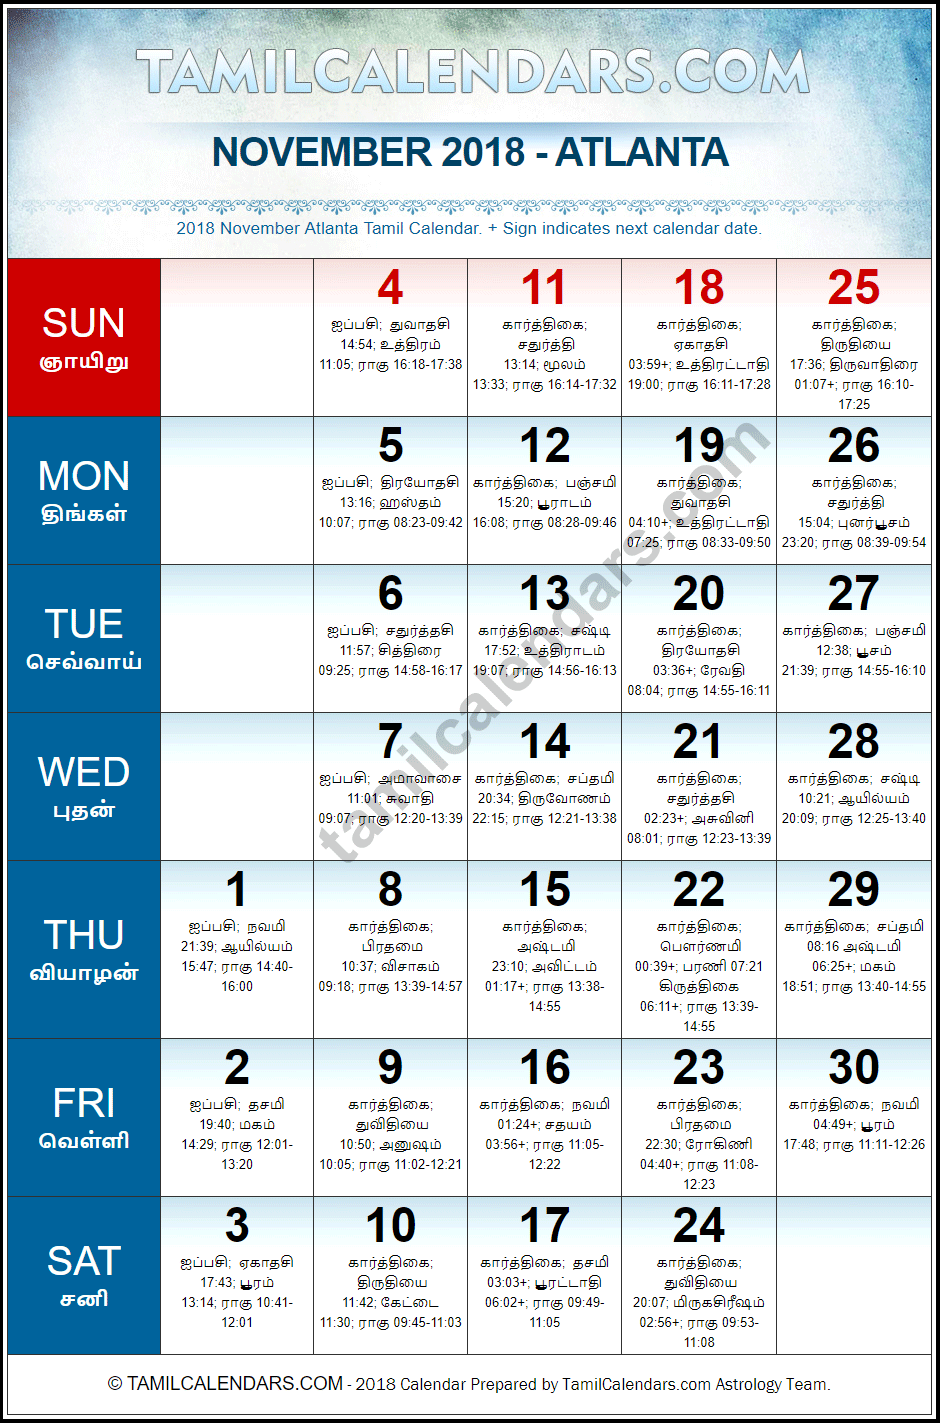 November 2018 Tamil Calendar for Atlanta, USA